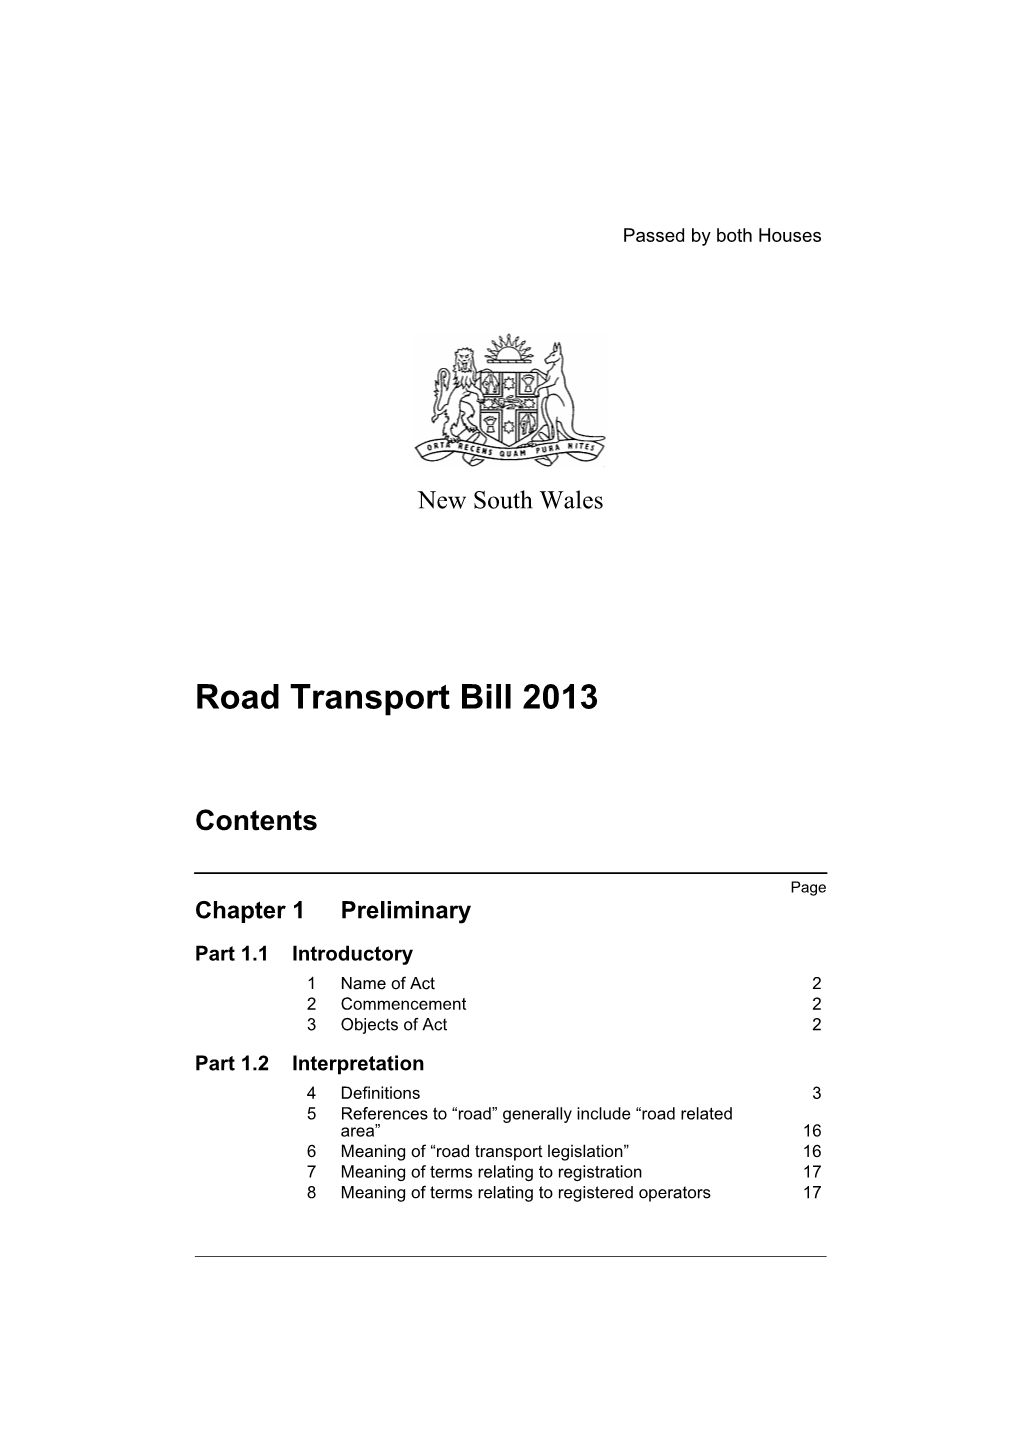 Road Transport Bill 2013